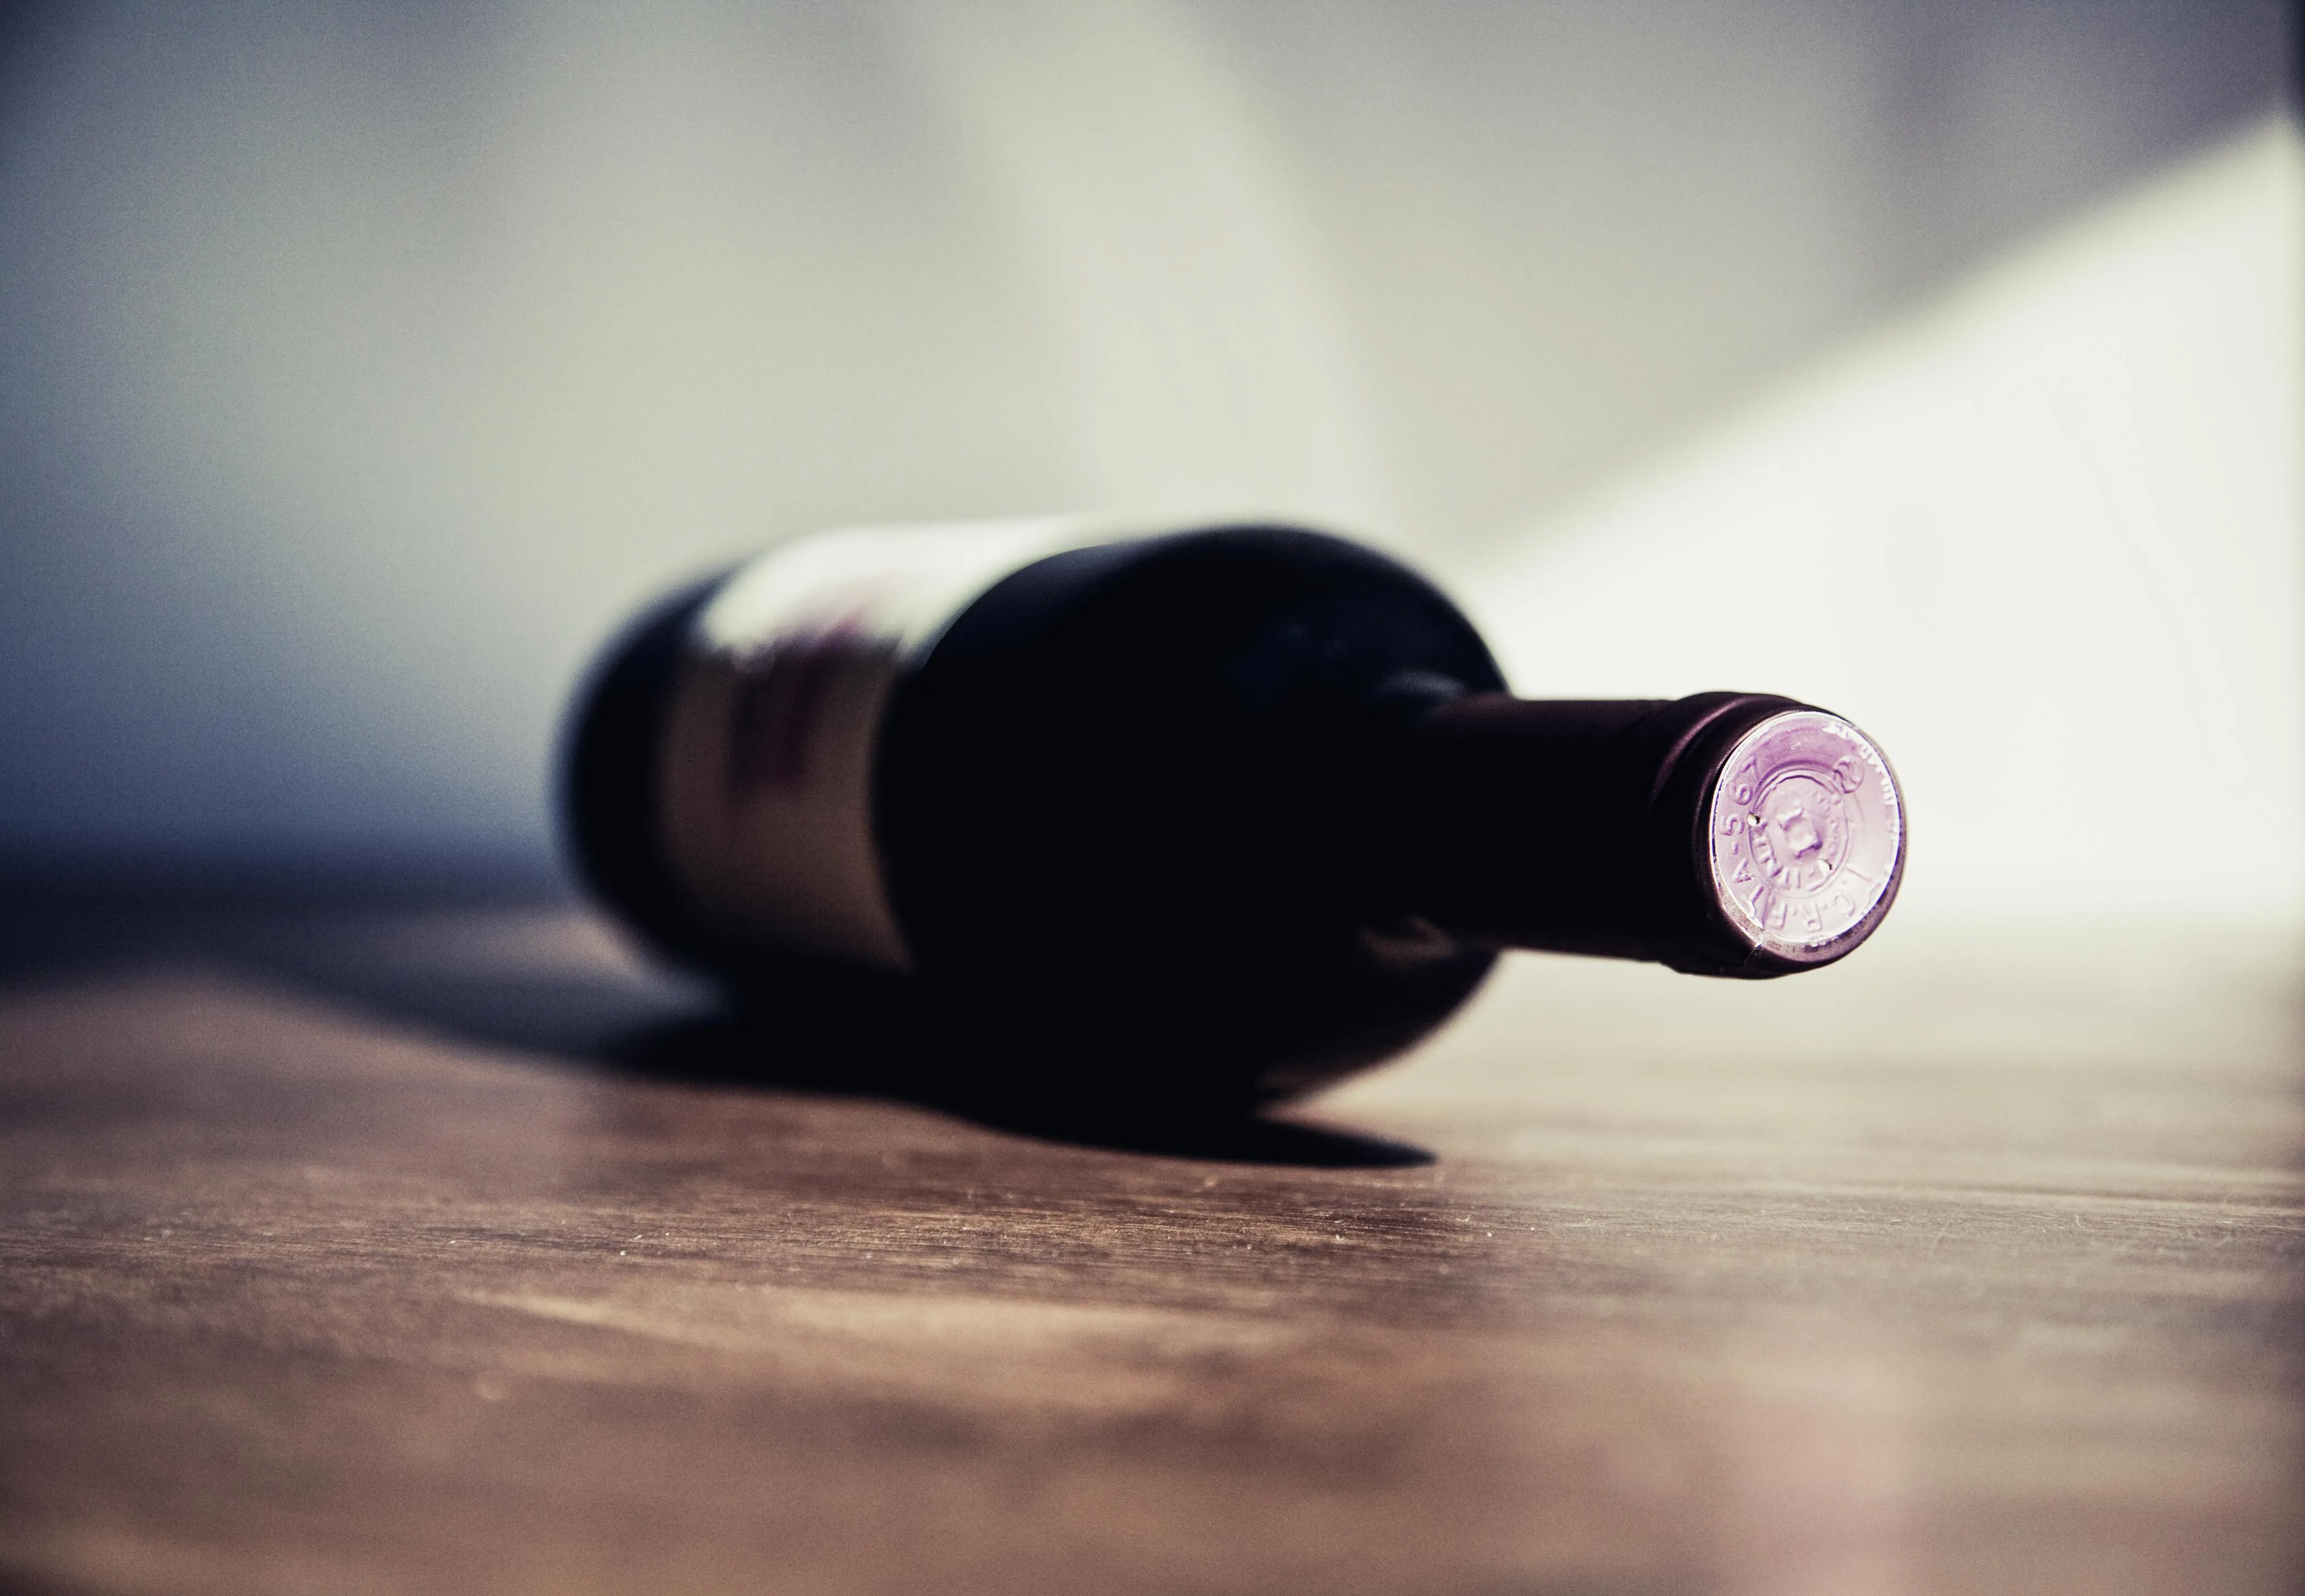 Горизонтальне положення — найкраще для зберігання вина